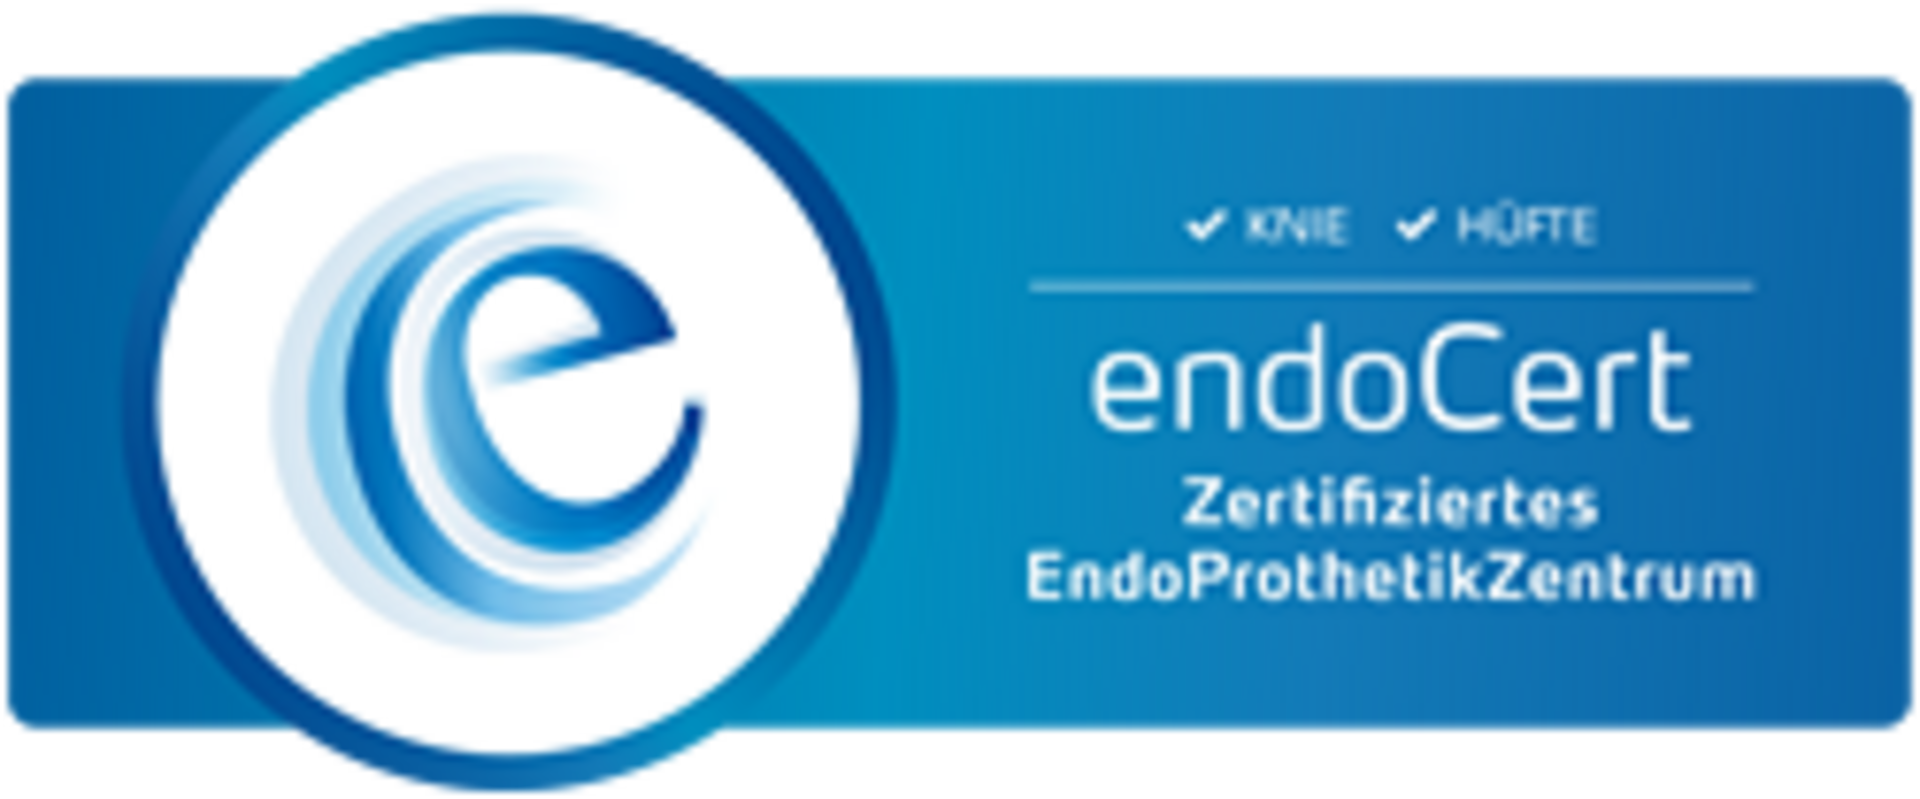 Zertifiziertes EndoProthetikZentrum